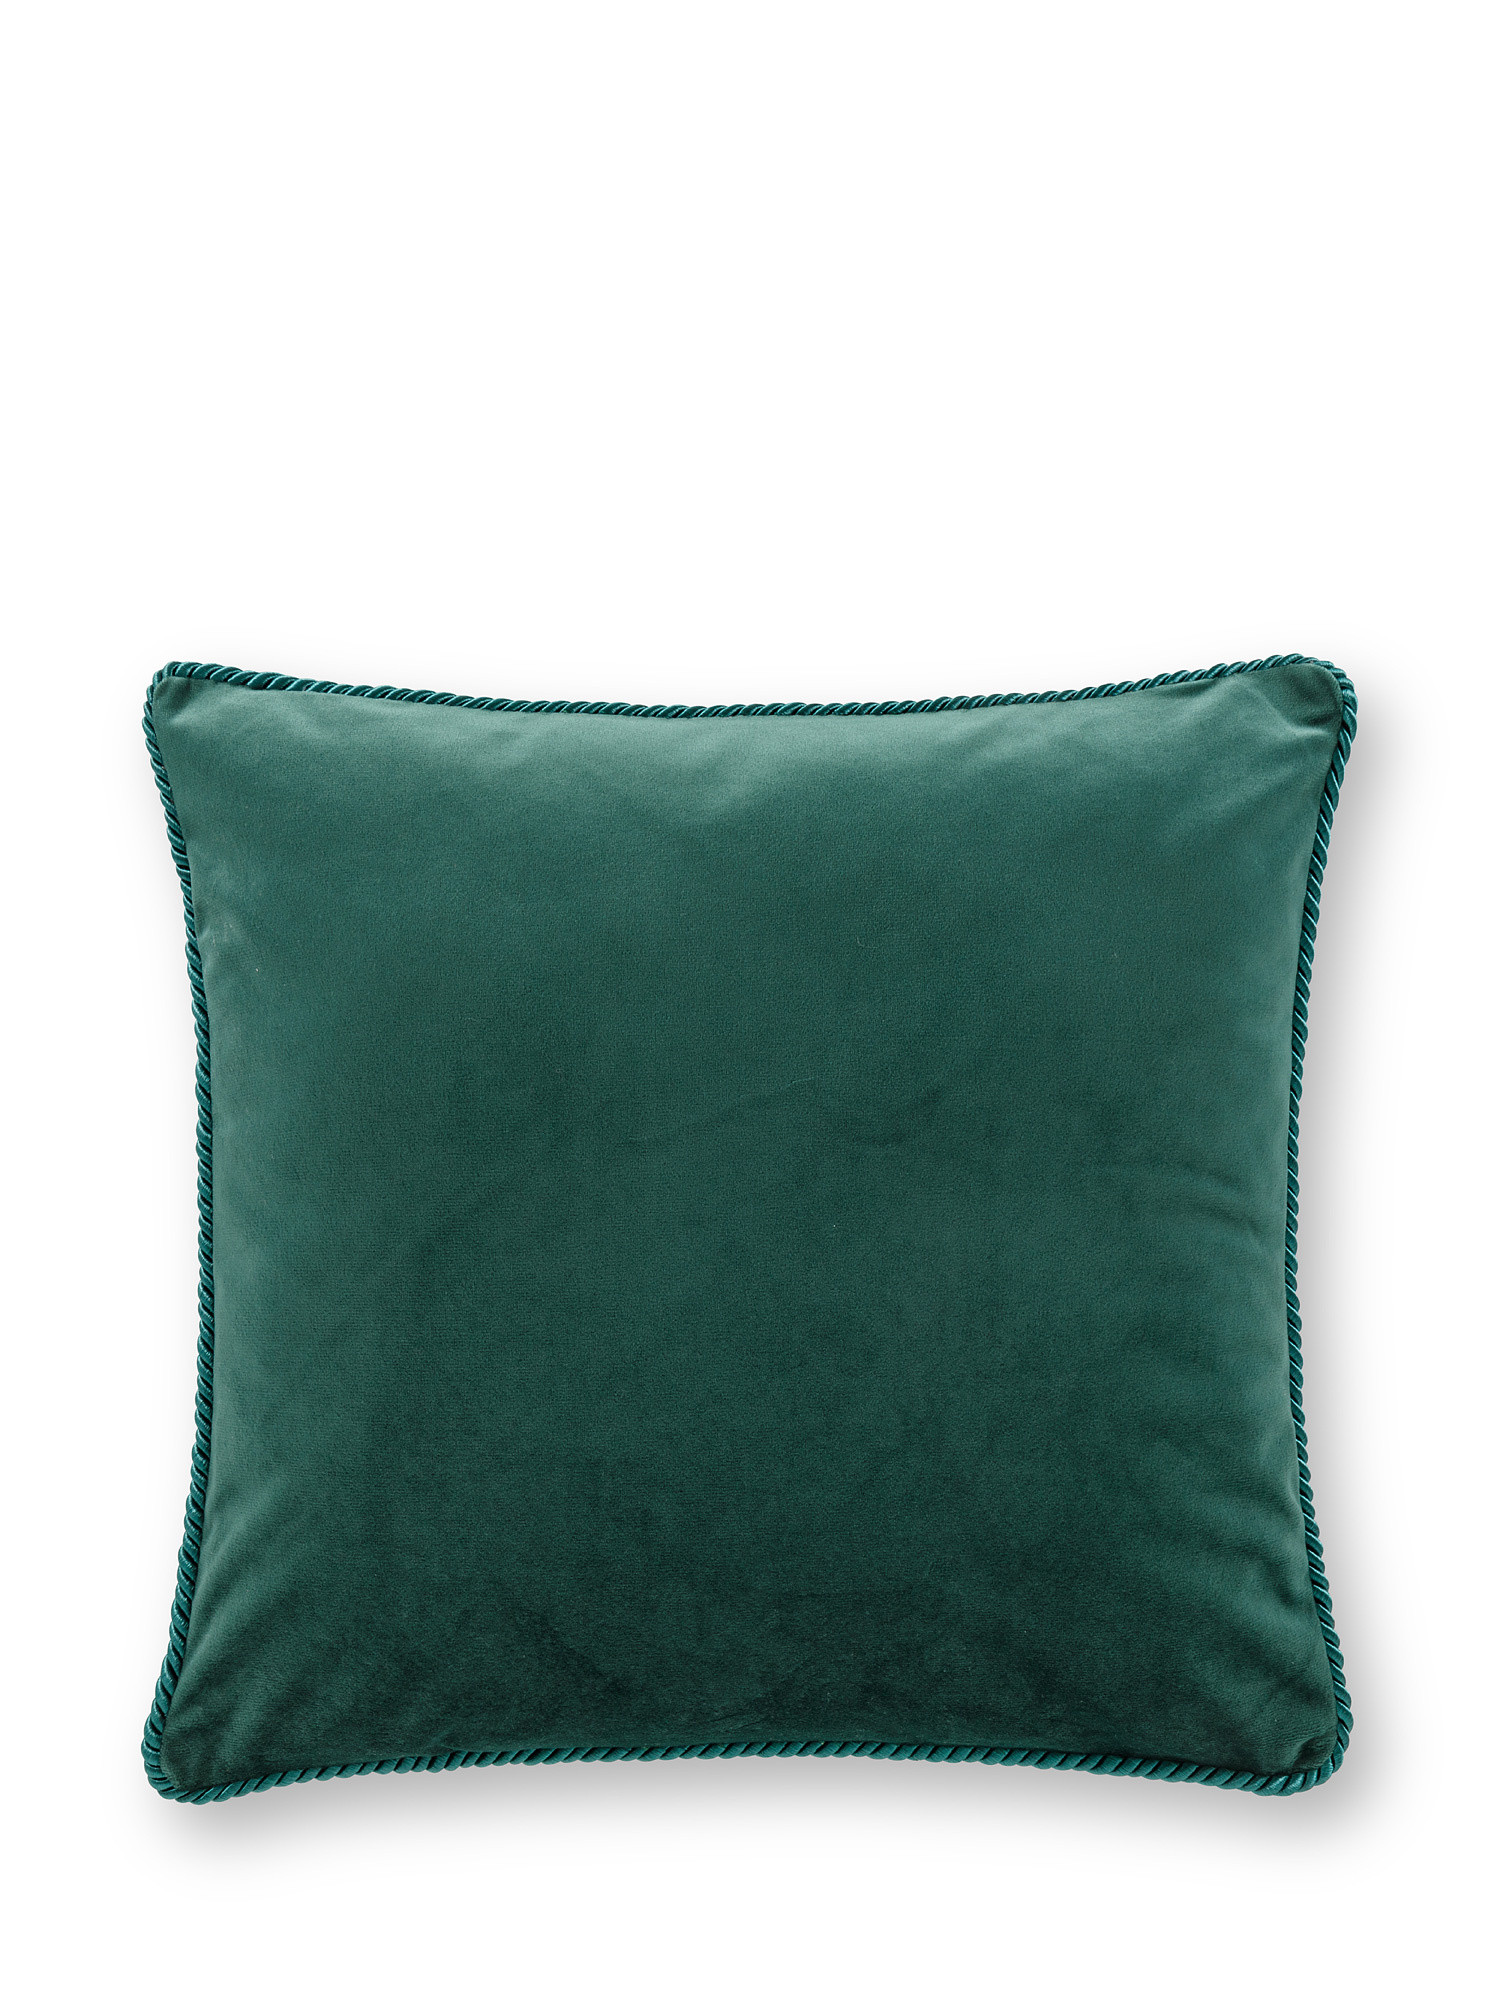 Cuscino velluto tinta unita 45x45cm, Verde scuro, large image number 0